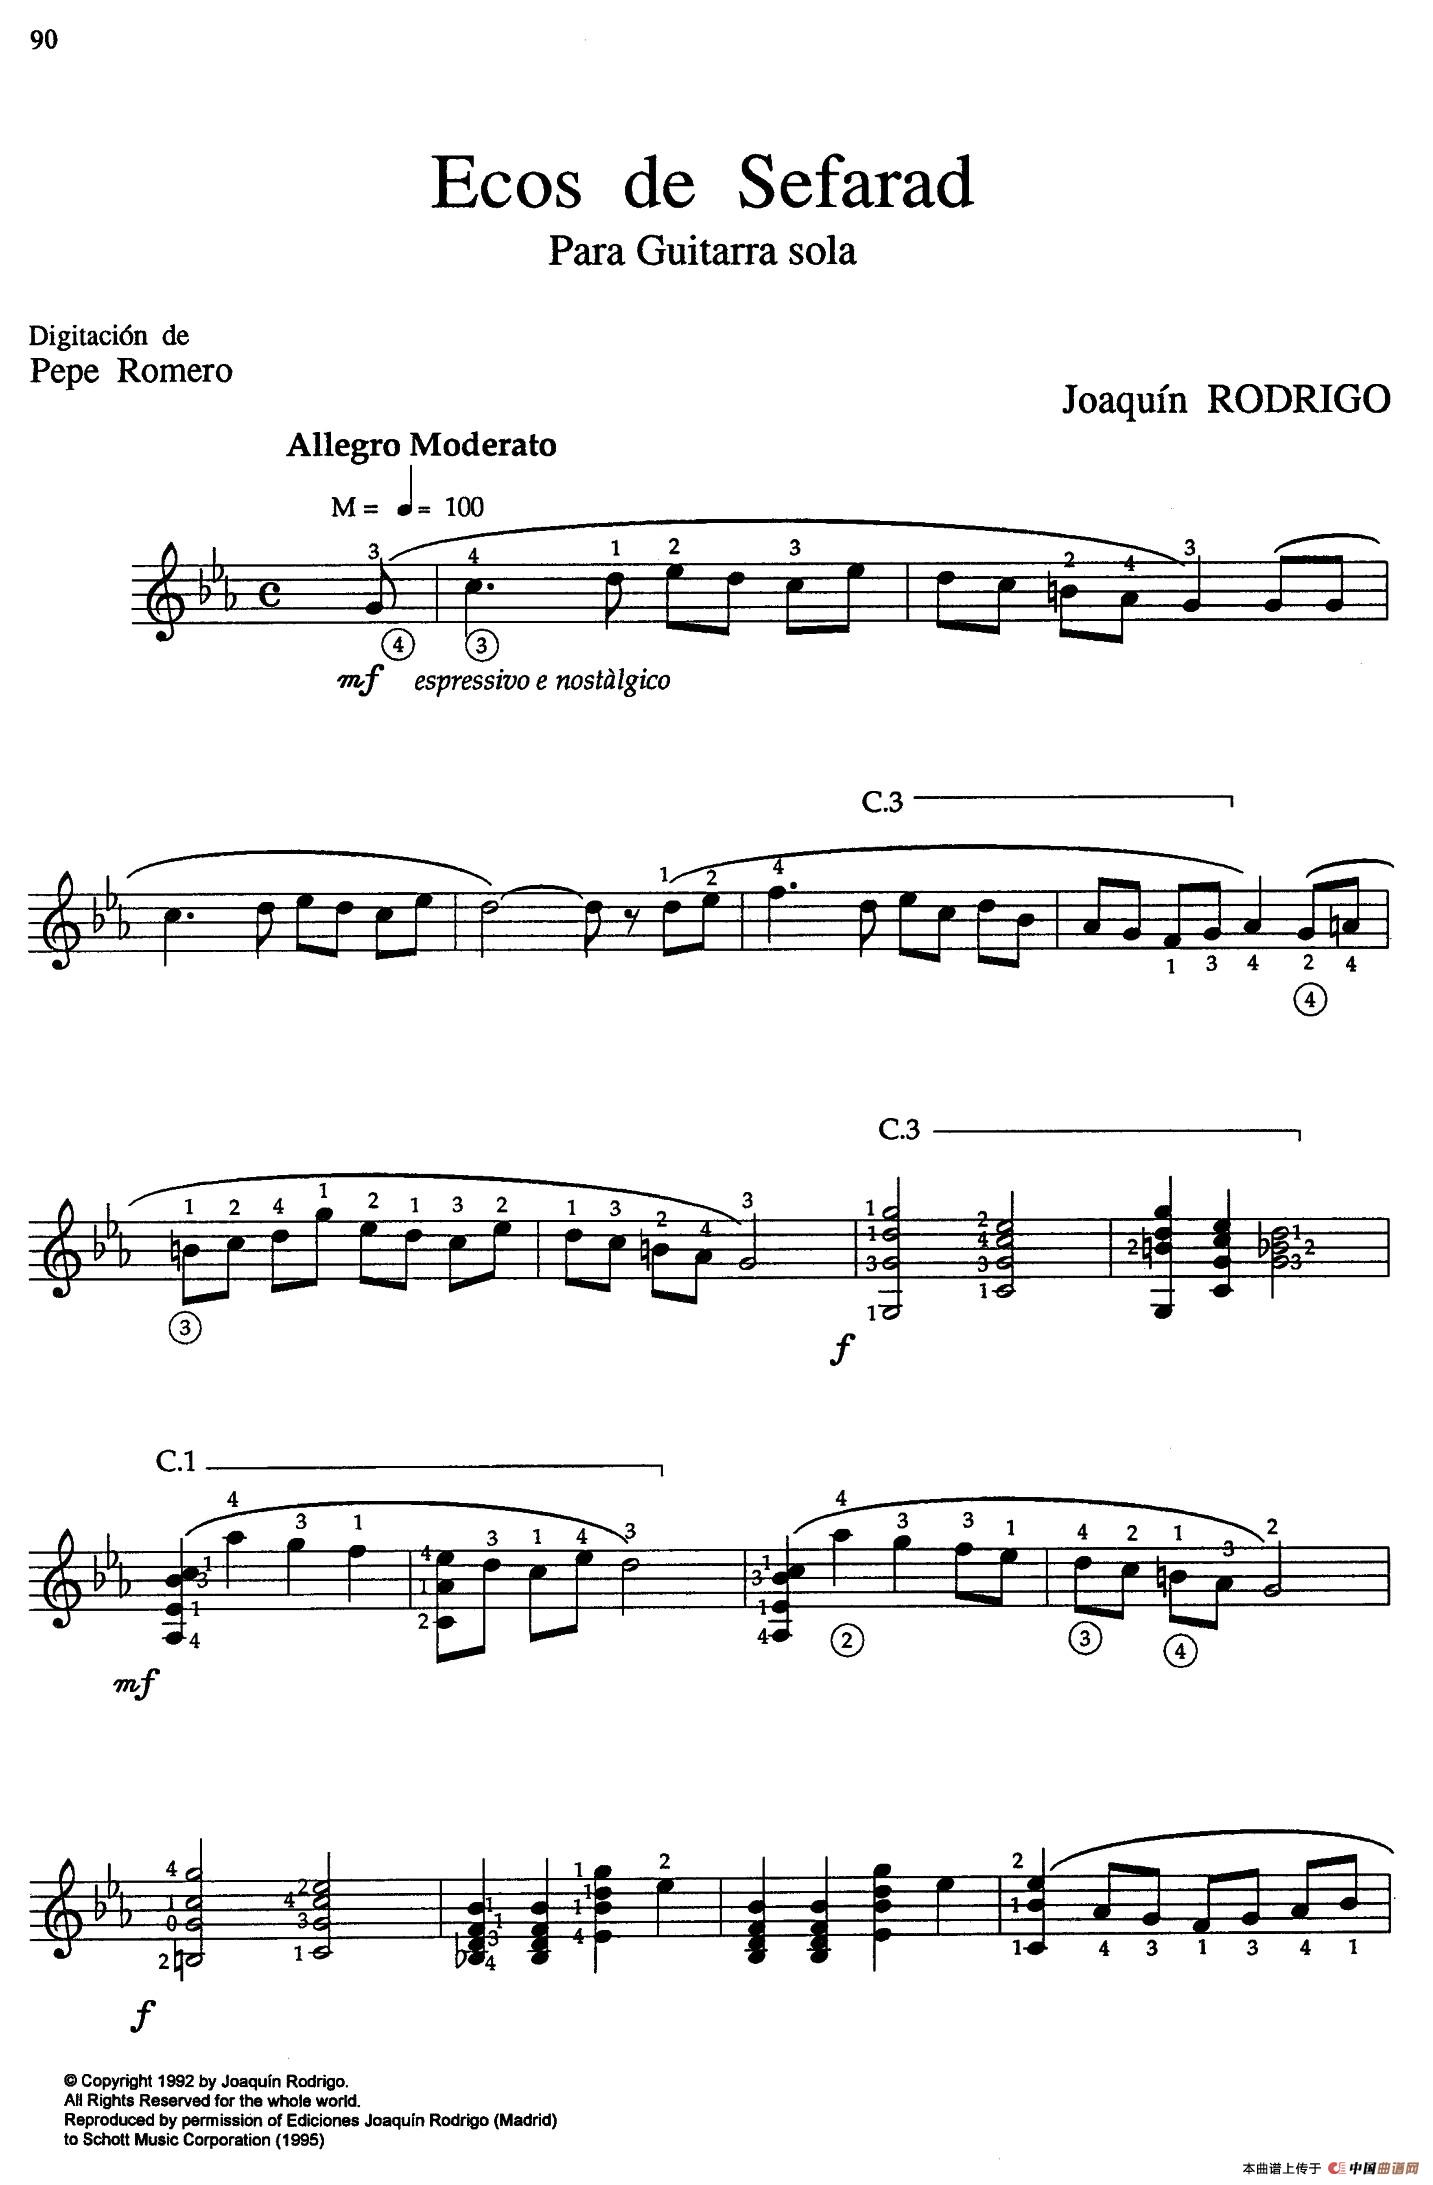 Joaquin Rodrigo Music for Guitar（罗德里戈吉他音乐P9